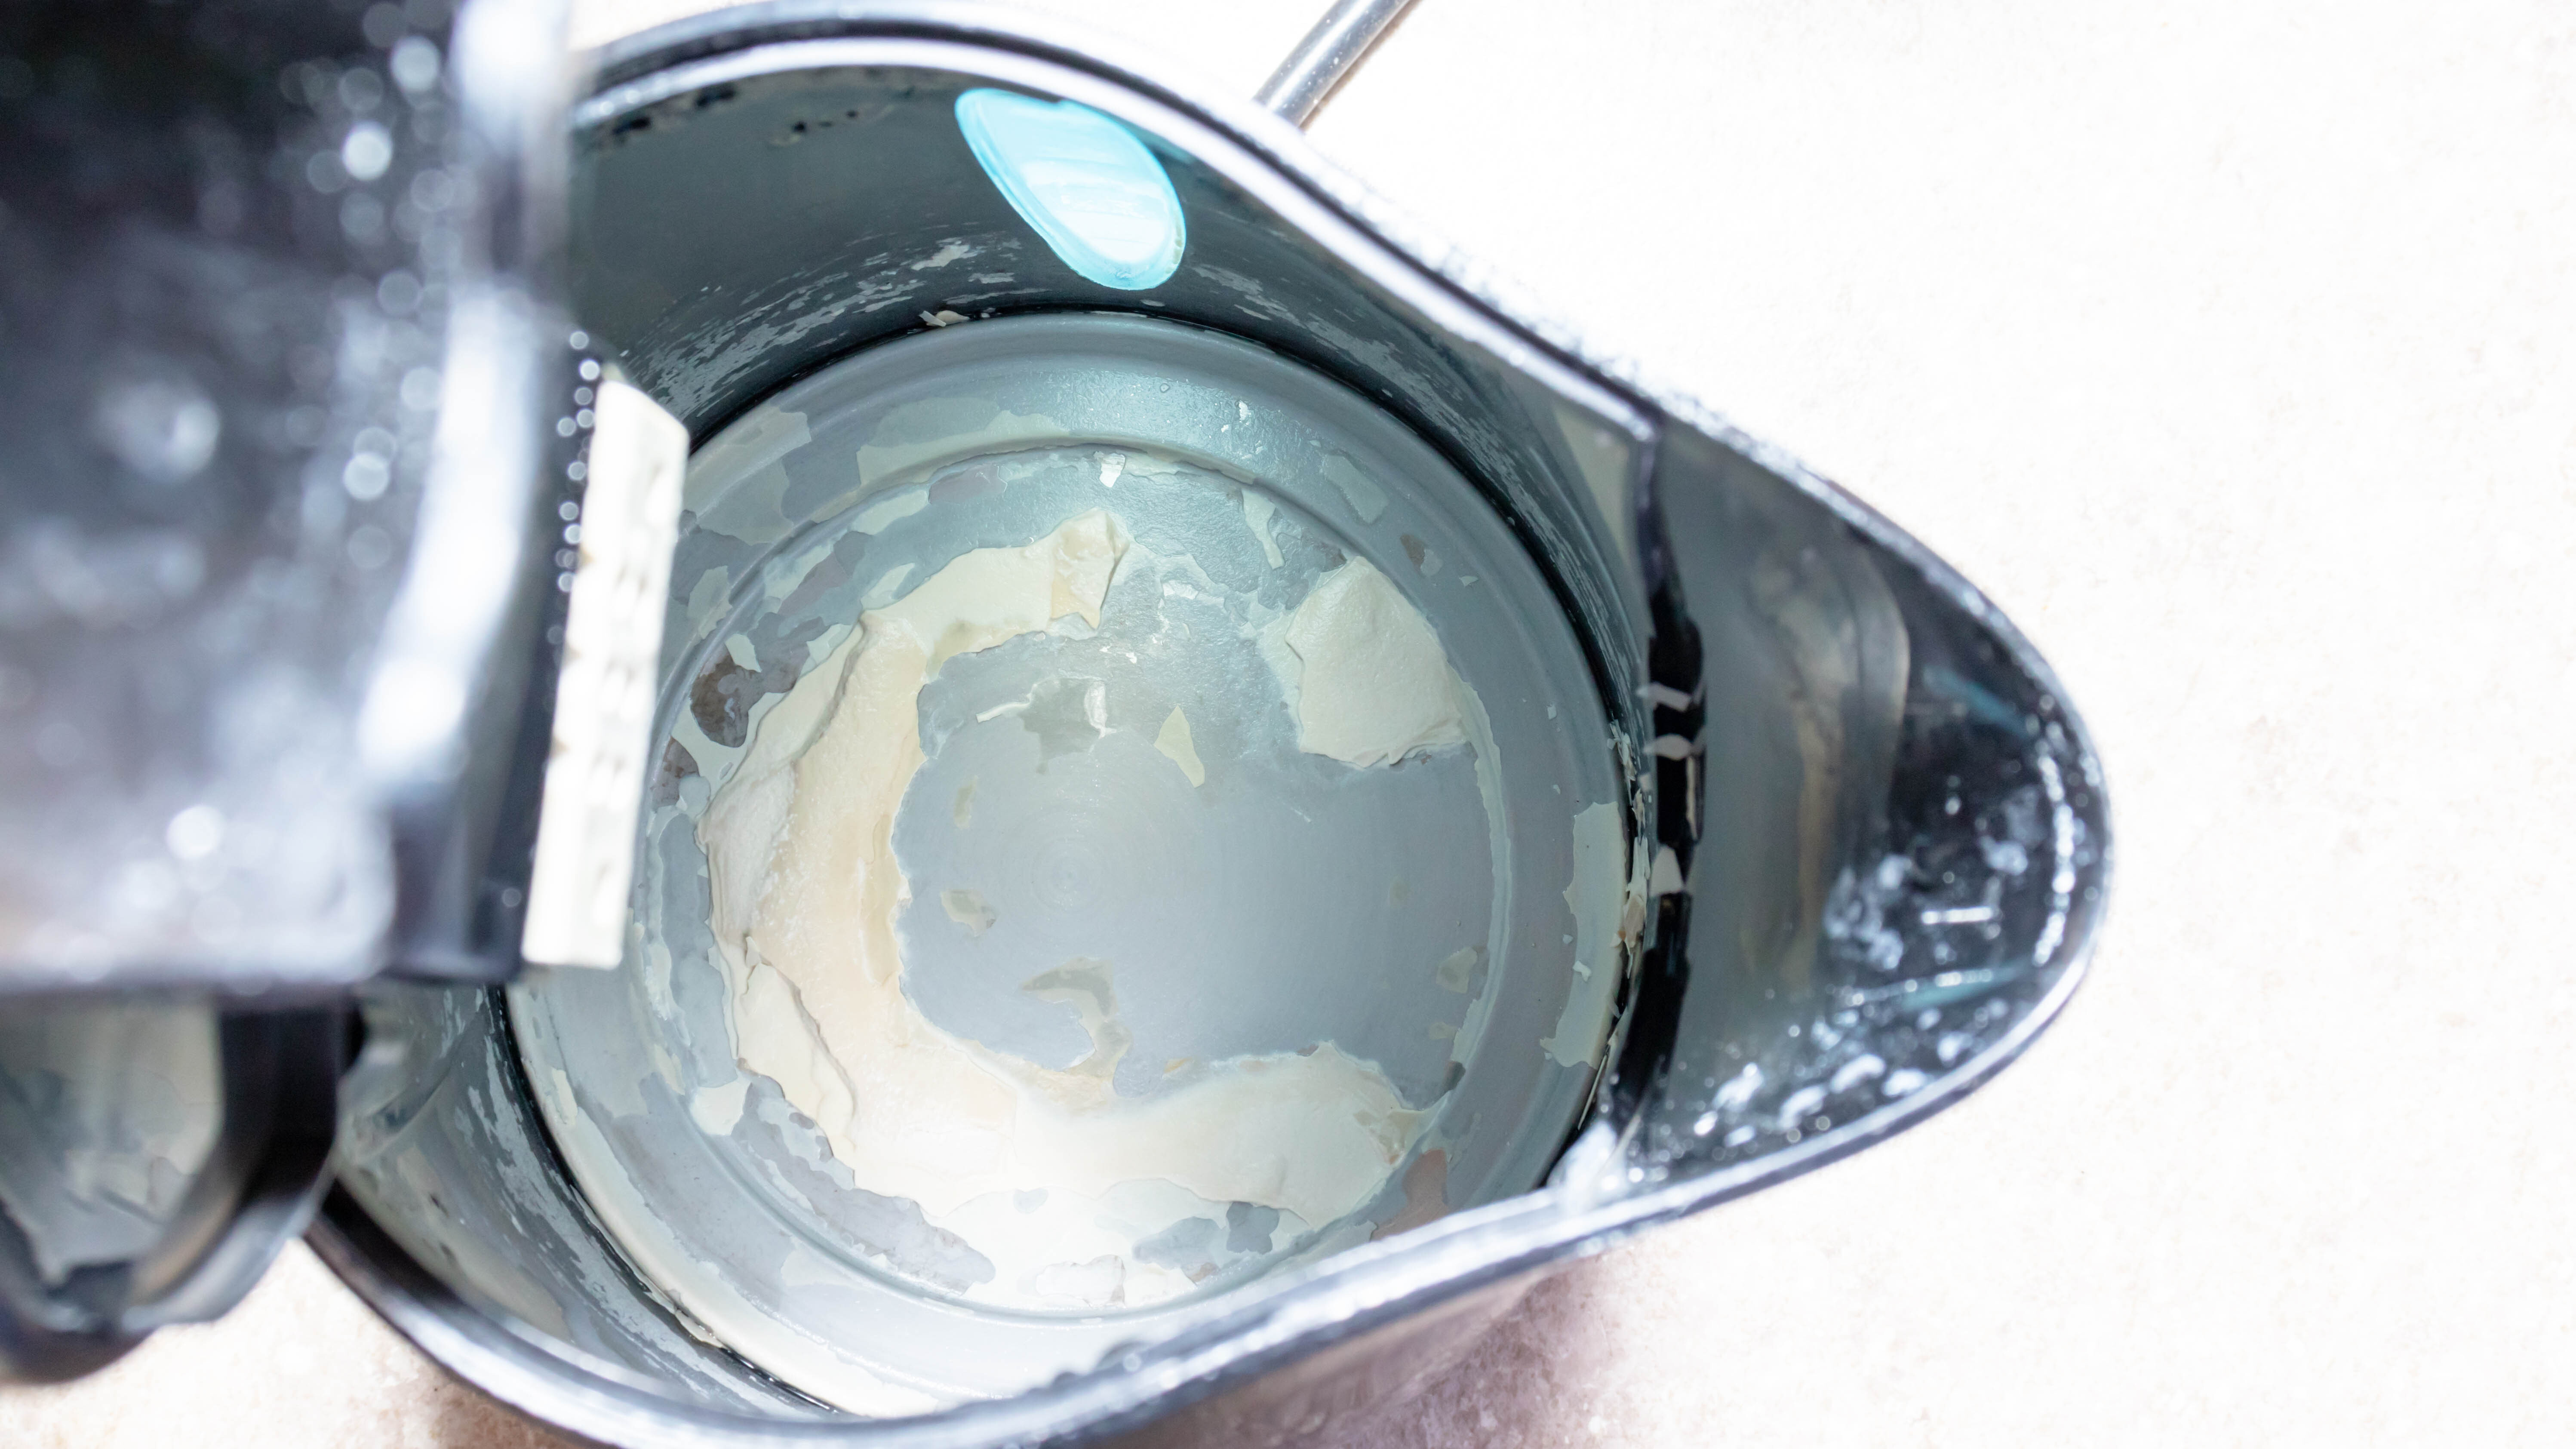 Вид изнутри чайника, наполовину наполненного водой, с скоплением накипи внутри.